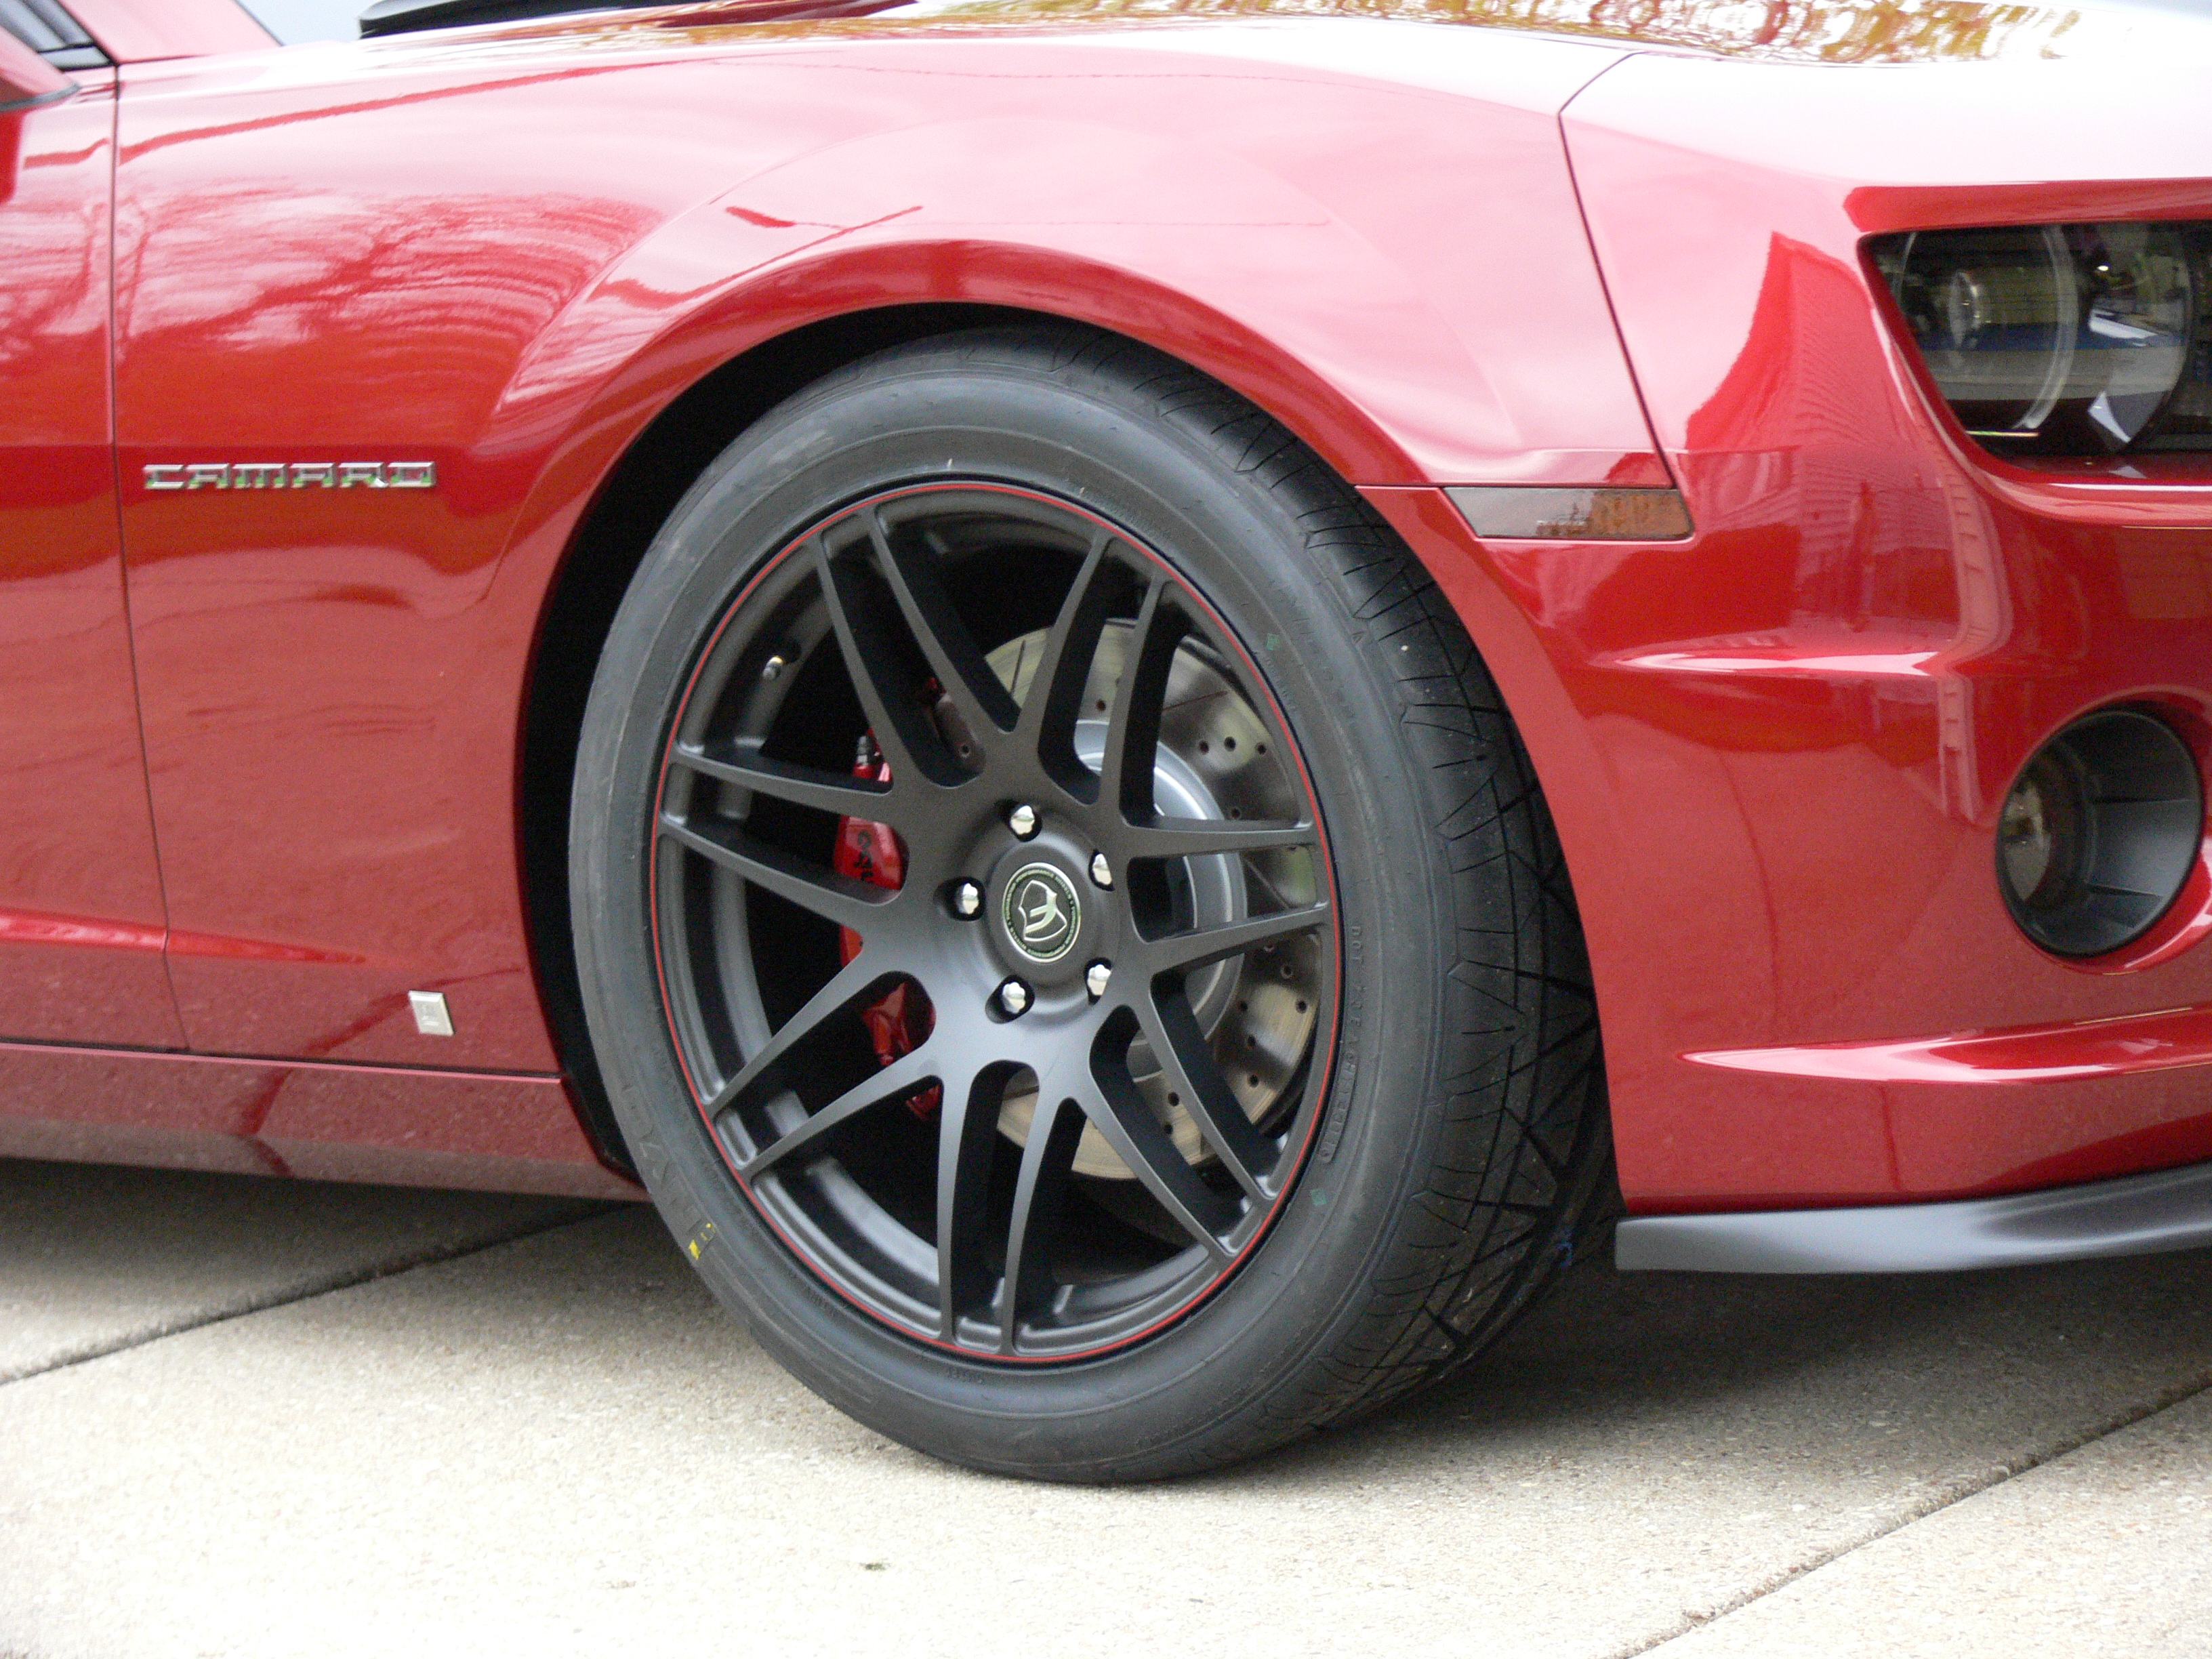 satin or gloss black wheels? - CorvetteForum - Chevrolet Corvette ...